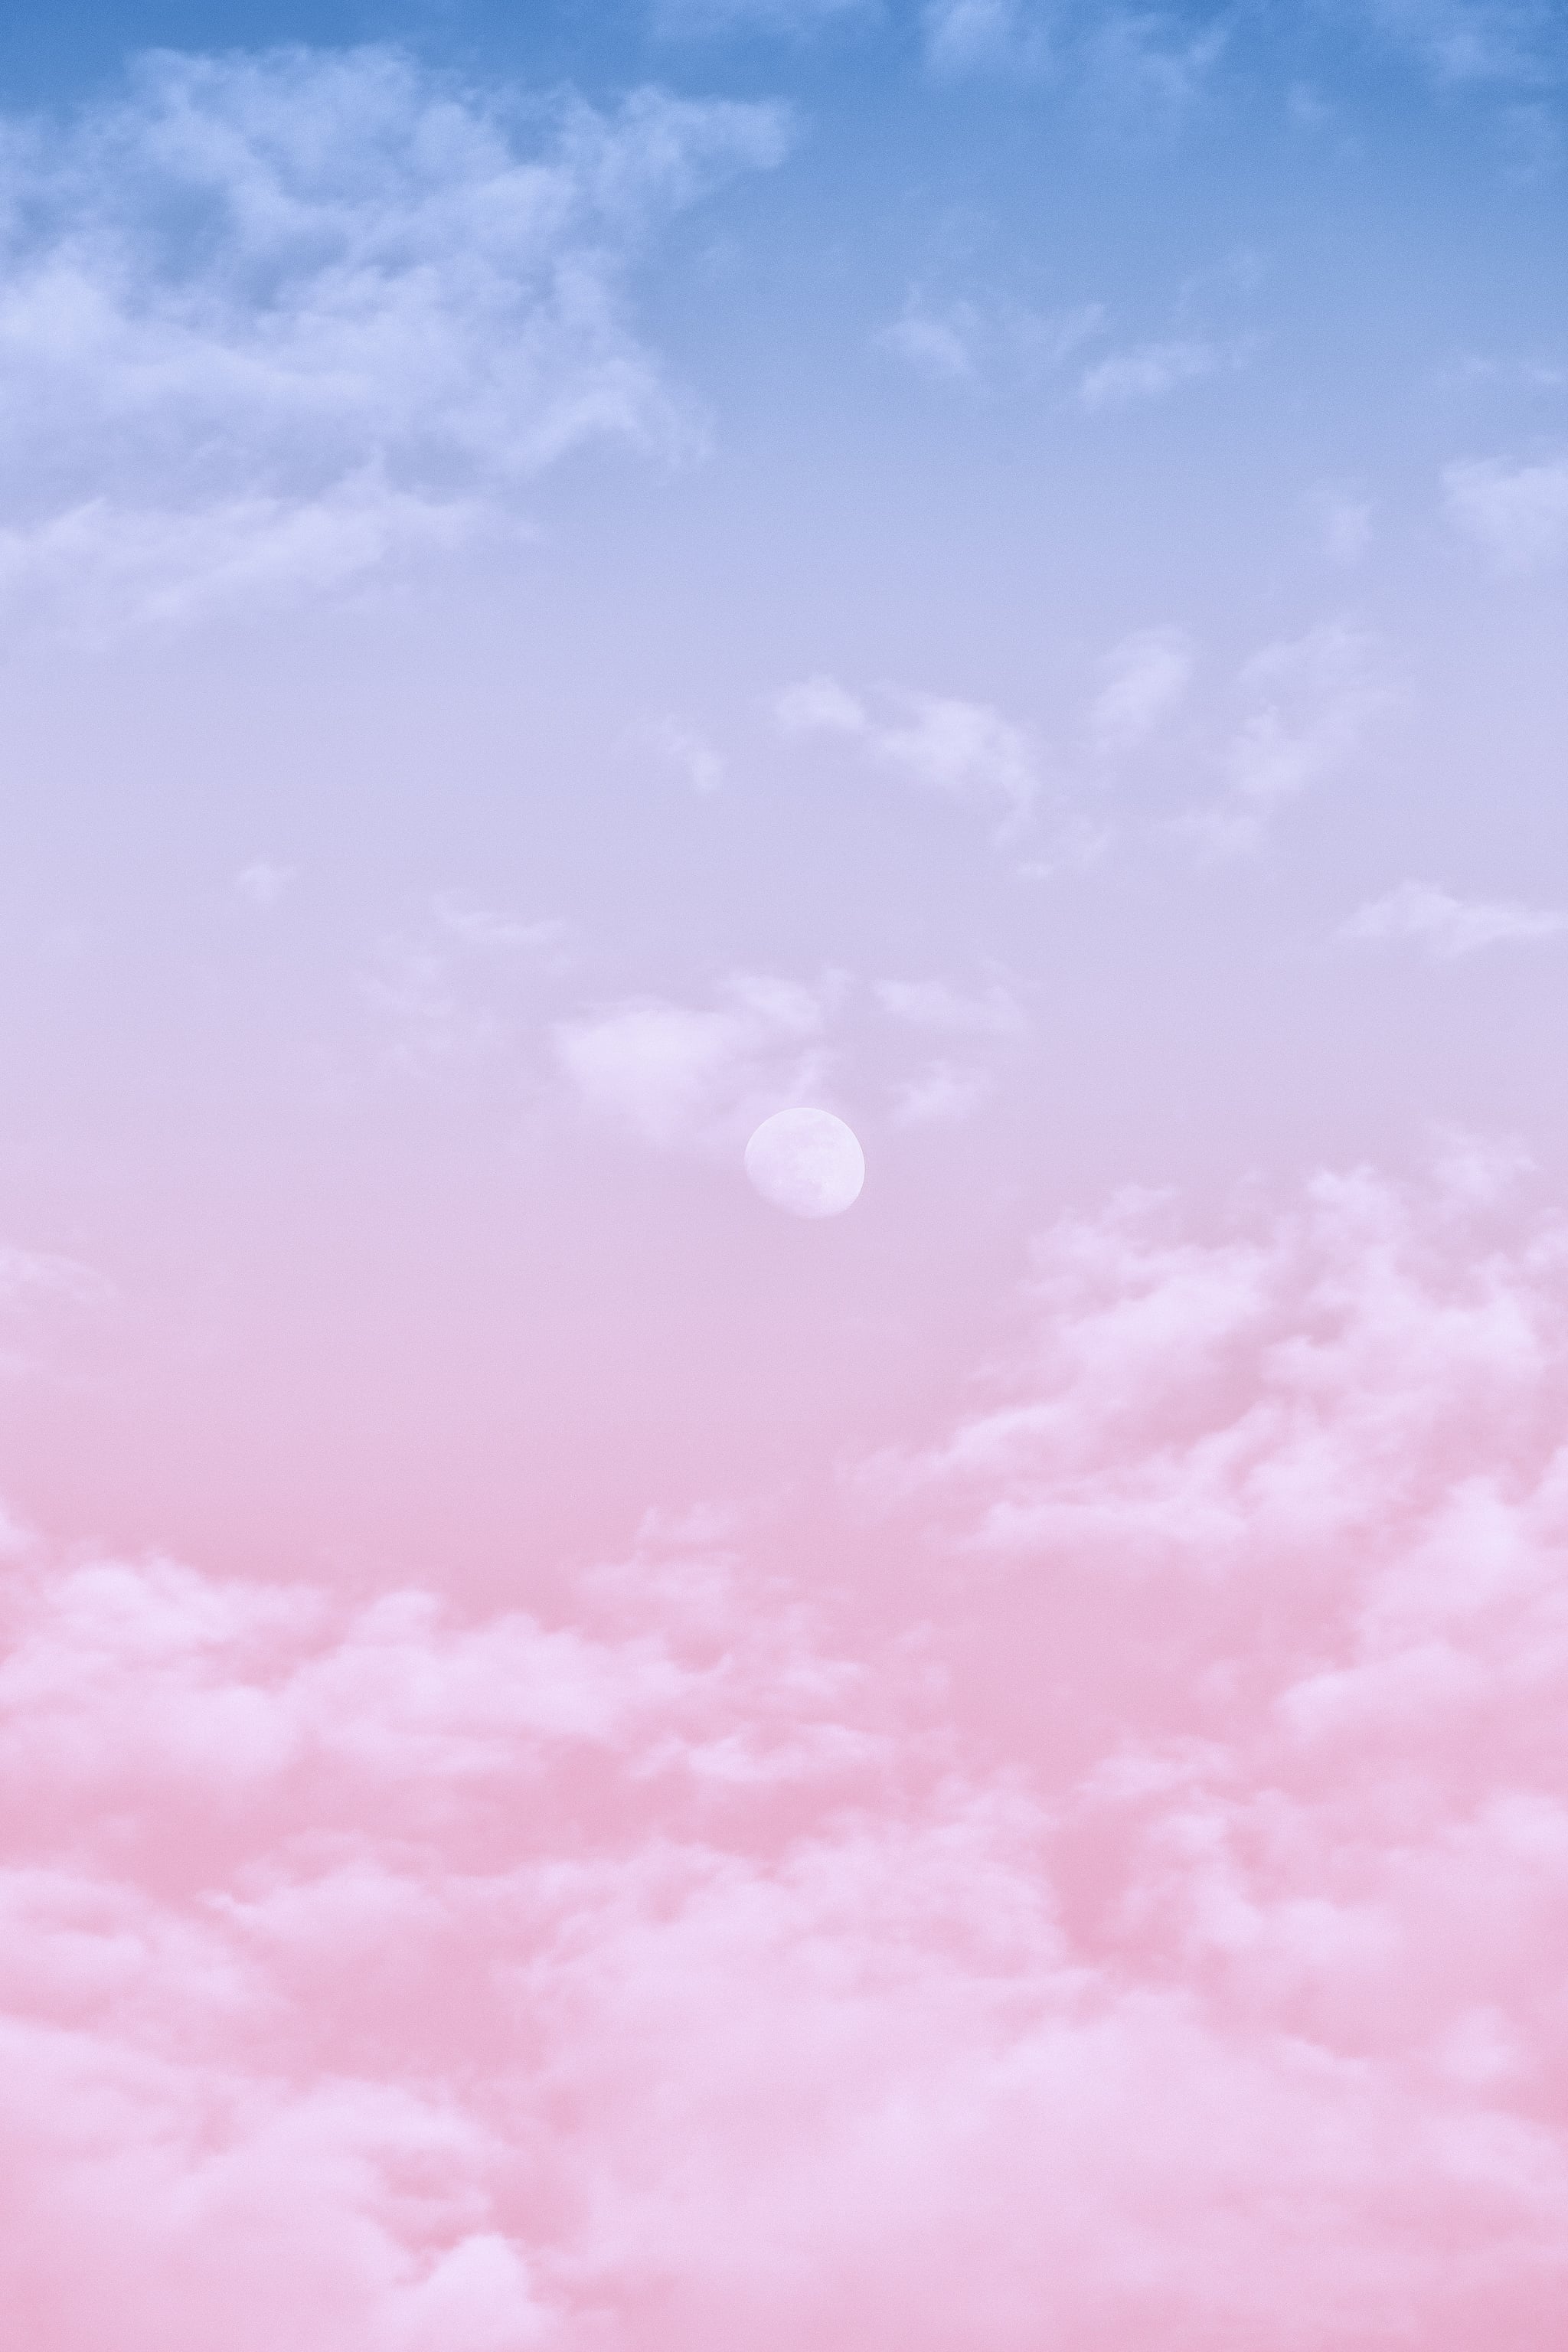 Với hình nền Pastel Sky cho iPhone, bạn sẽ được trải nghiệm cảm giác nhẹ nhàng và ấm áp của bầu trời với gam màu nhạt. Hình nền được tạo ra một cách tinh tế và chuyên nghiệp, kết hợp các sắc thái màu mềm mại để tạo ra một trải nghiệm tuyệt vời cho người dùng iPhone.